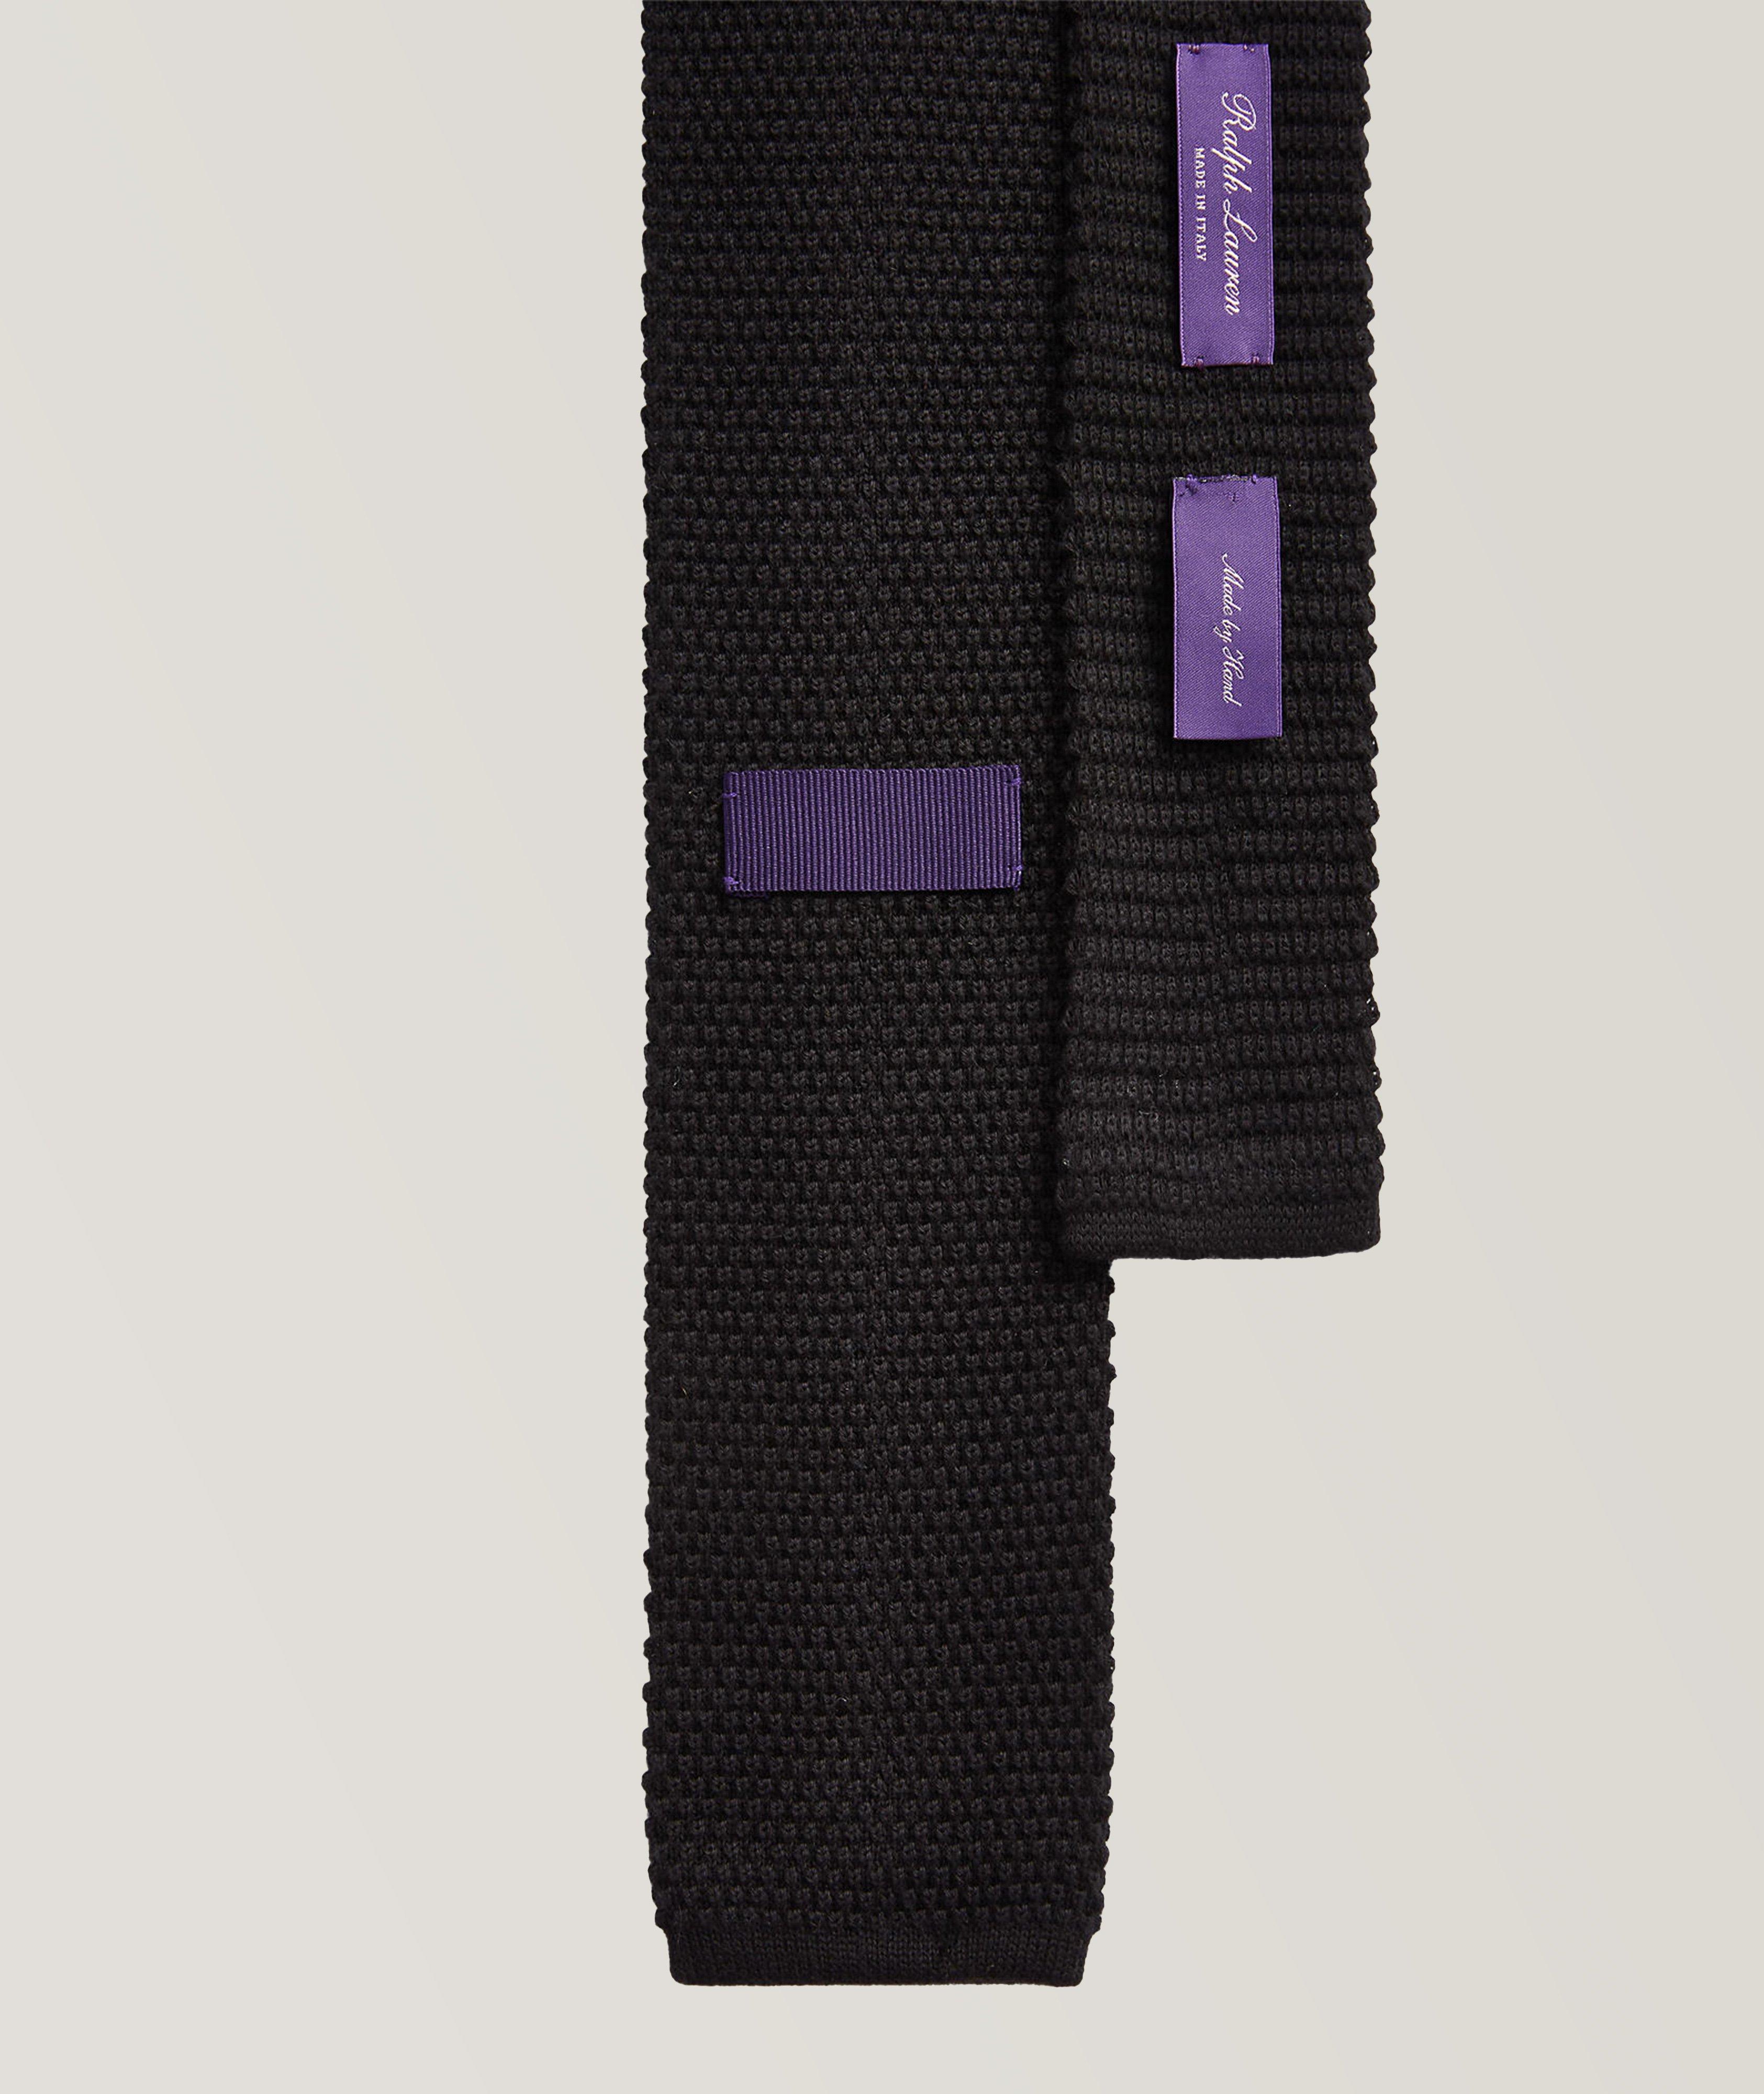 Ralph Lauren Purple Label Woven Cotton-Cashmere Knit Tie | Ties